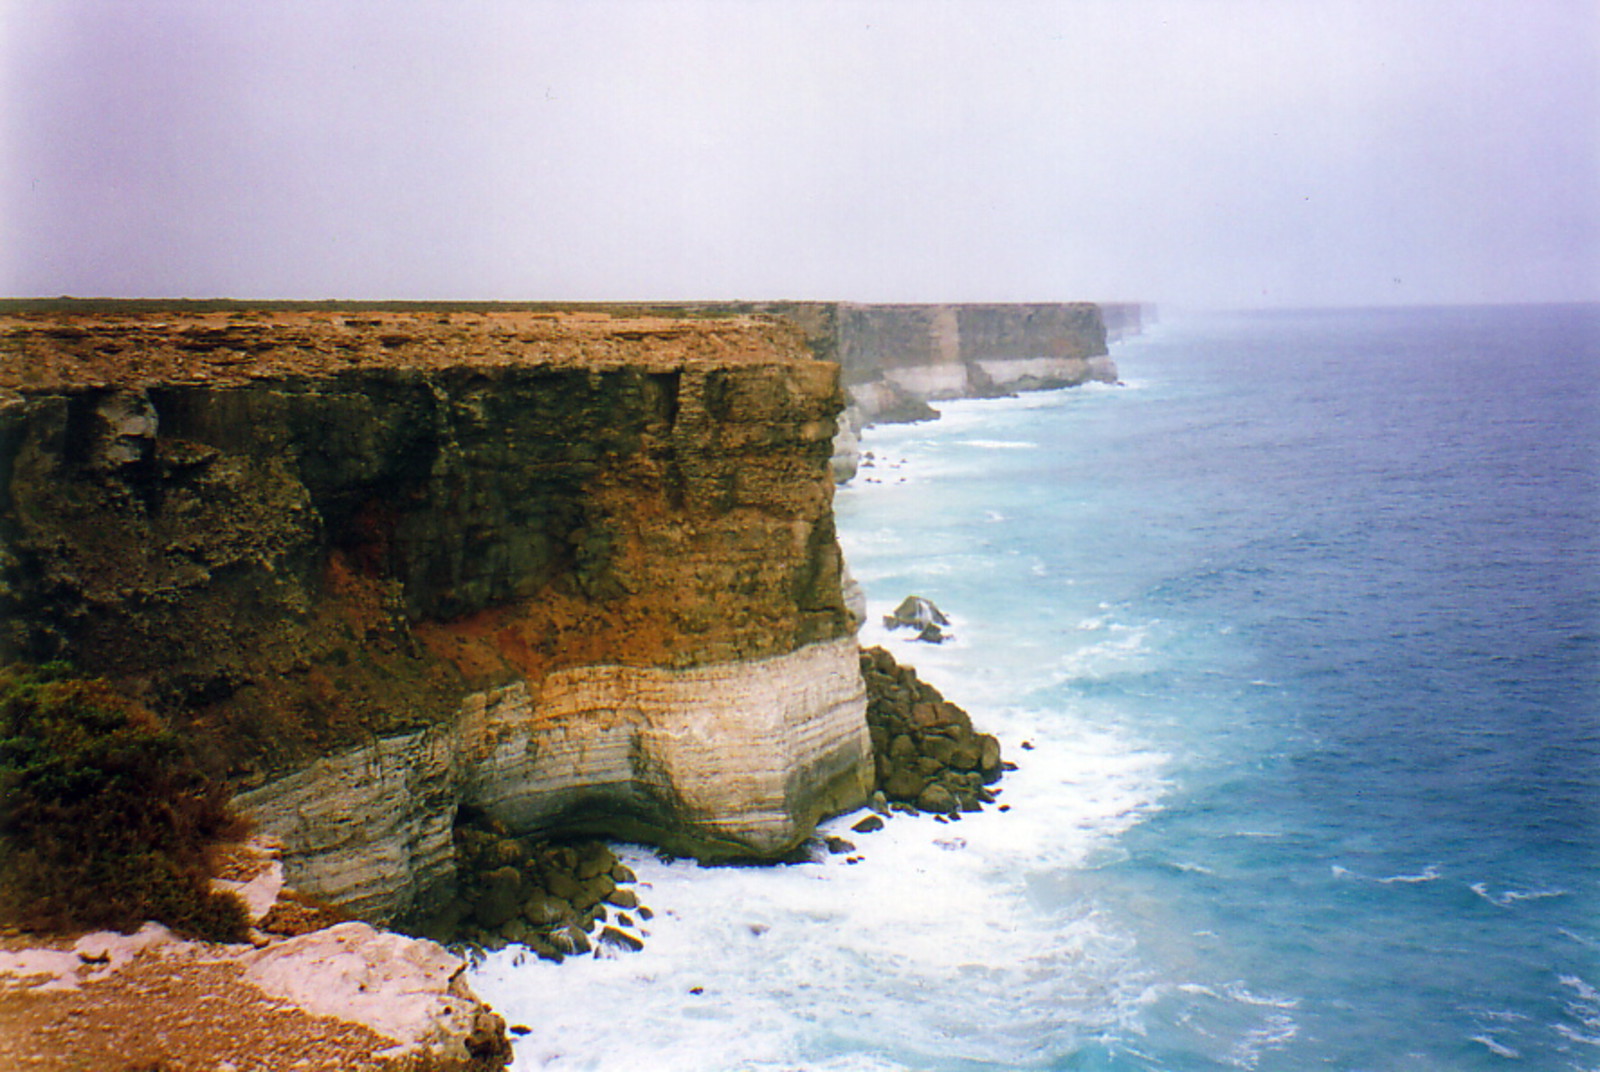 Cliffs along the Great Australian Bight